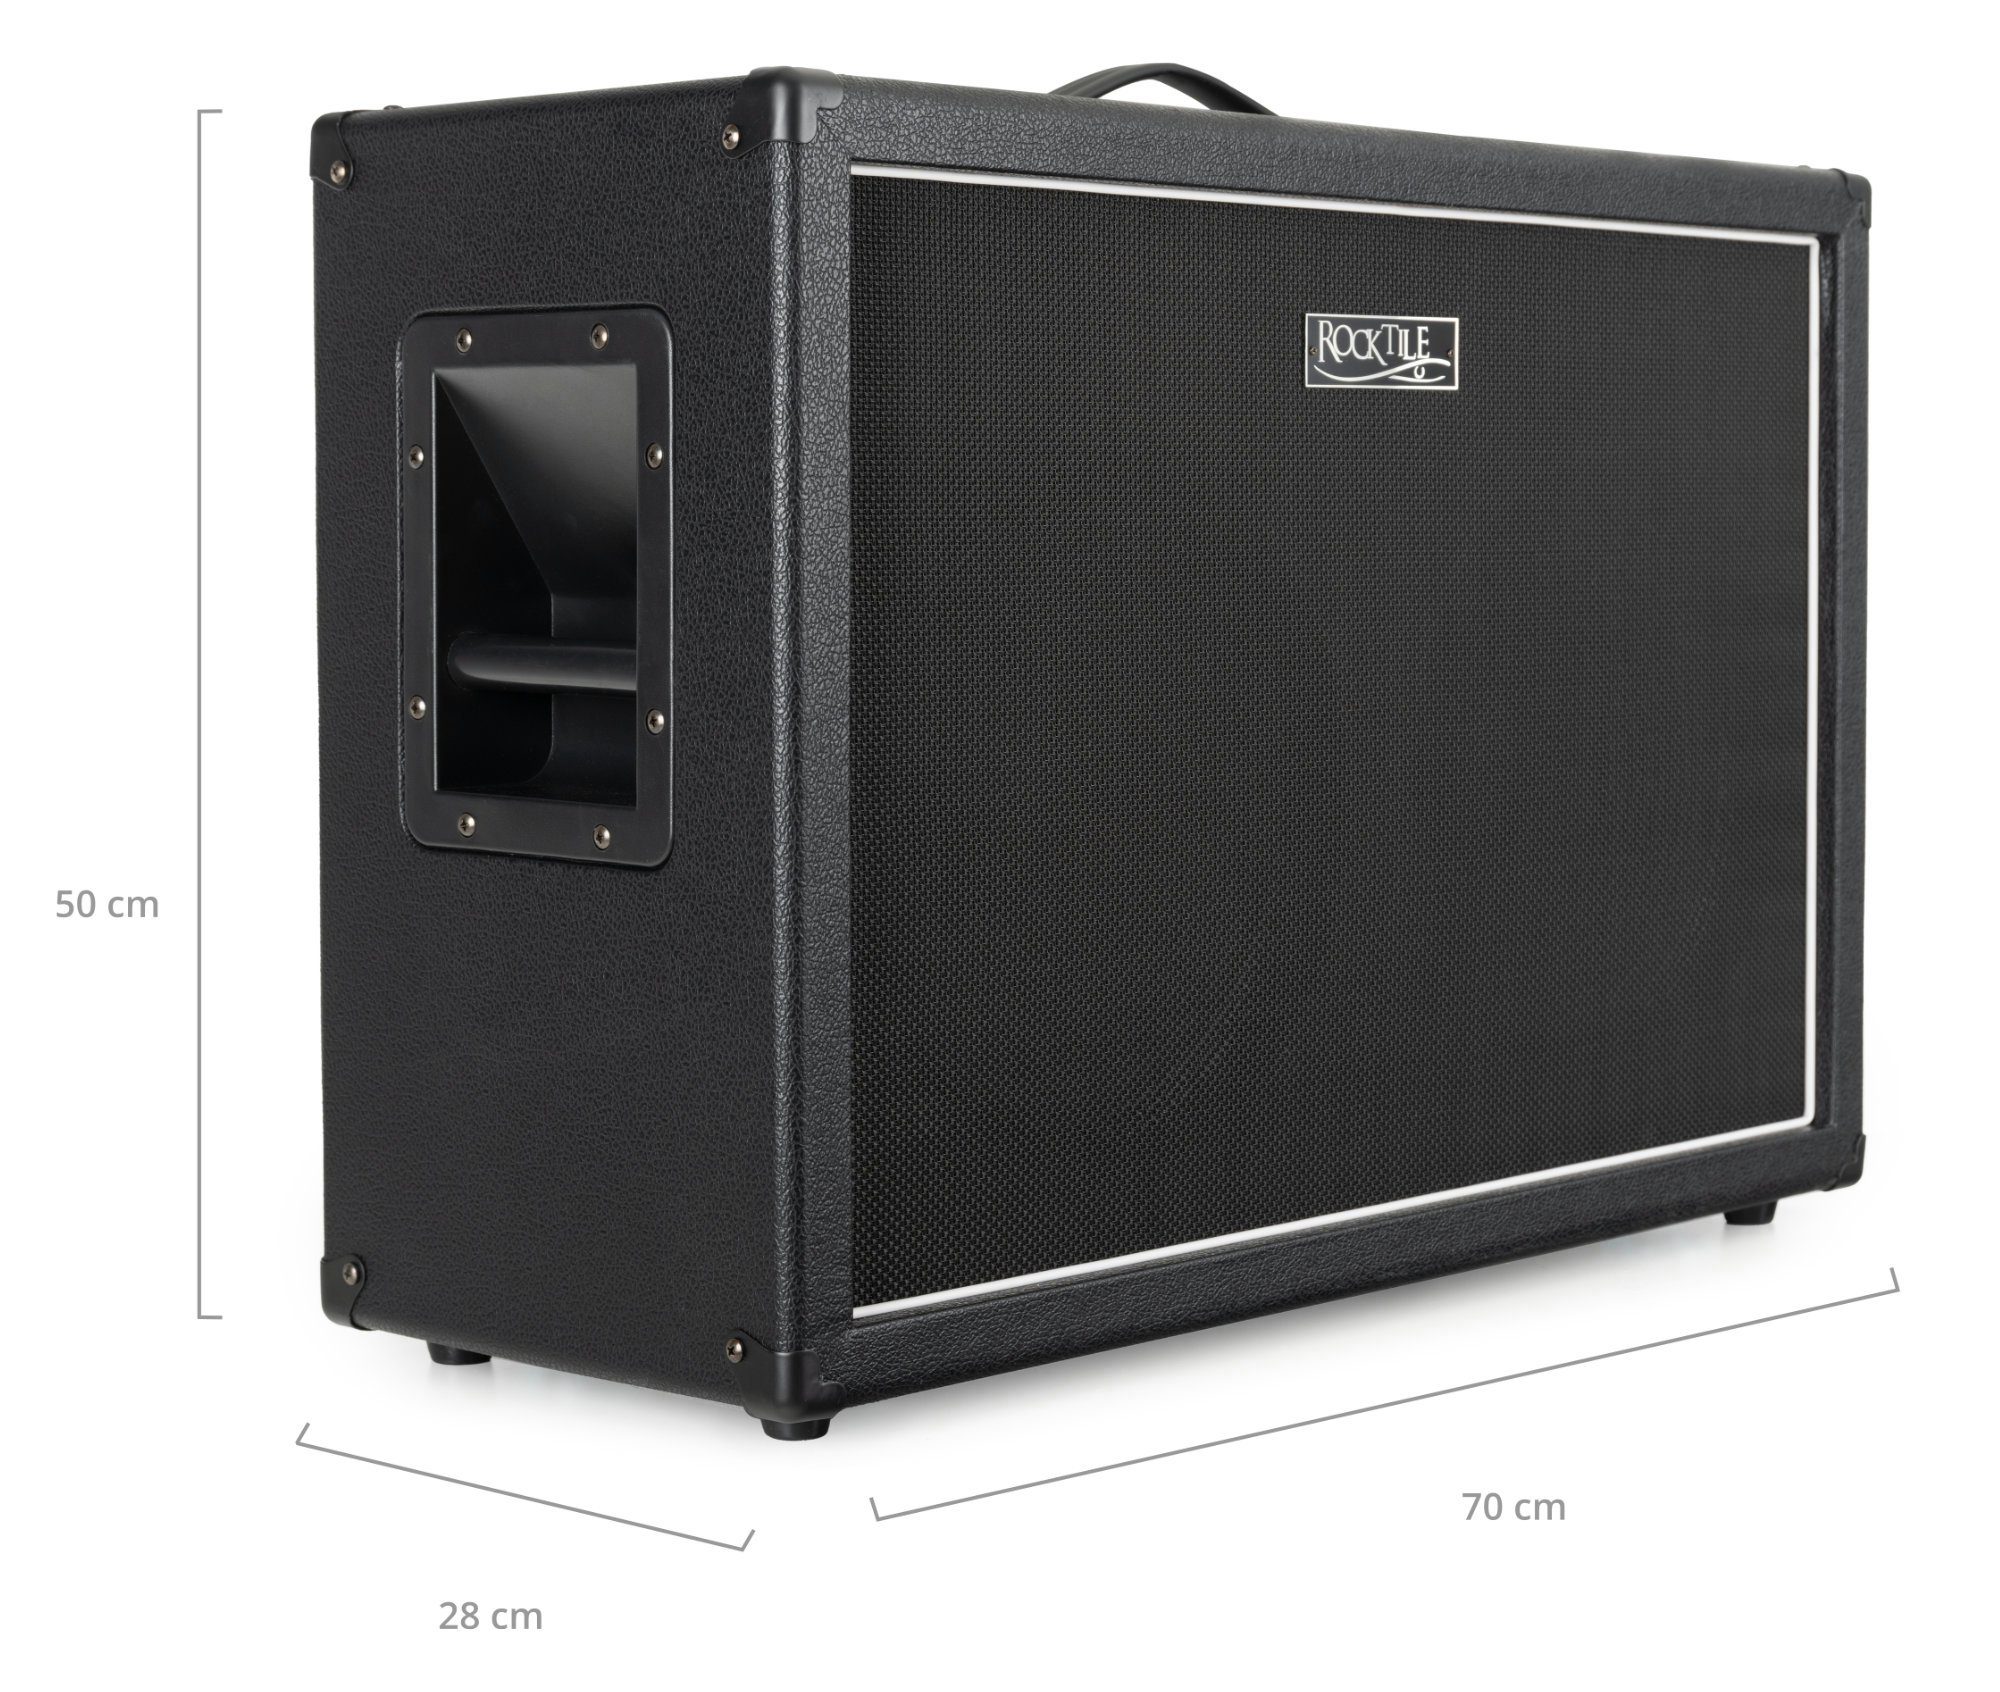 Rocktile GB212 Gitarren Lautsprecher W, zoll Topteile Box E-Gitarren - Speaker) 2x Cabinet 12 (240 für